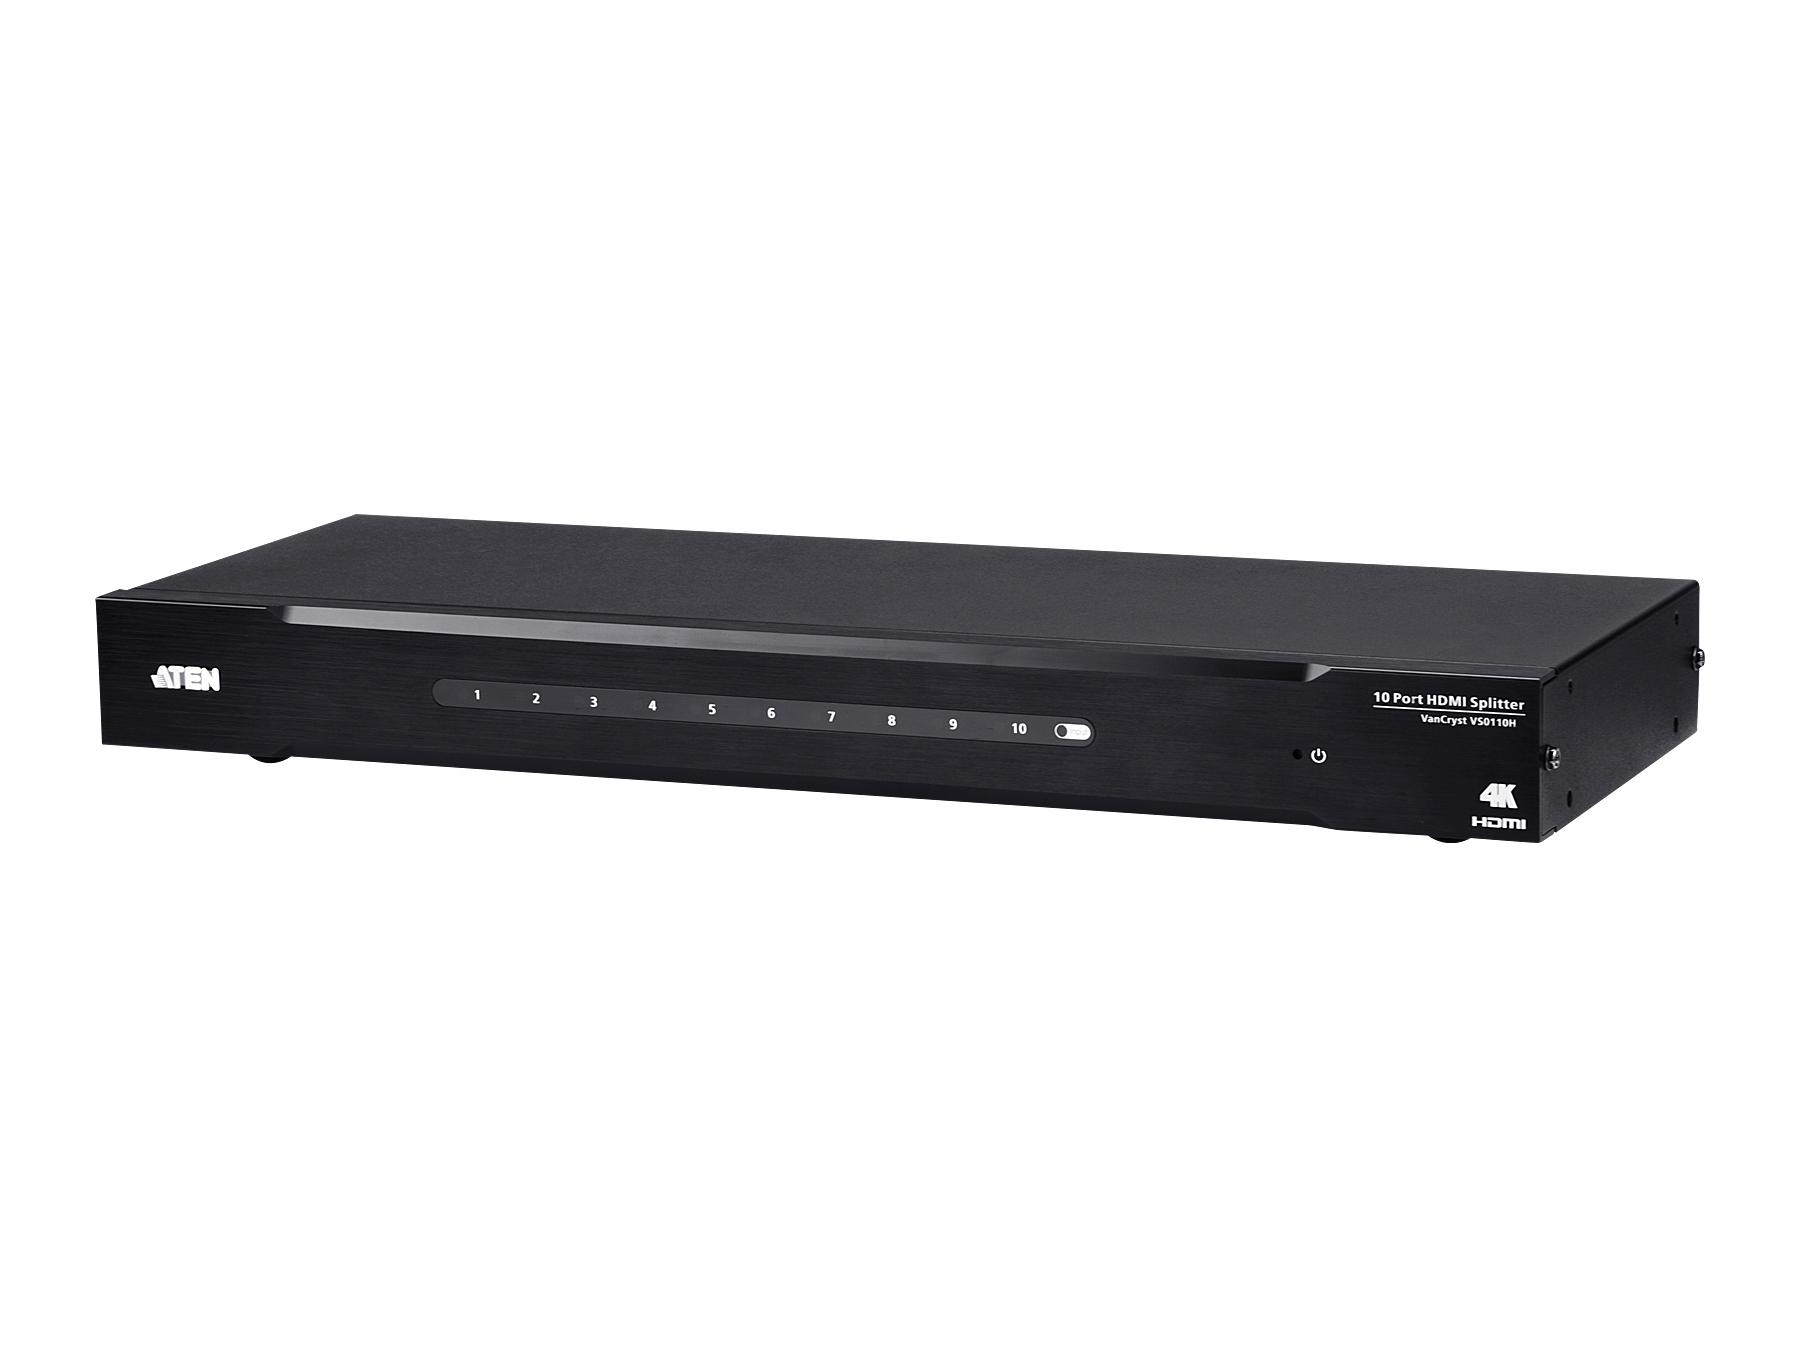 VS0110HA 10-Port 4K HDMI Splitter/HDCP compliant by Aten